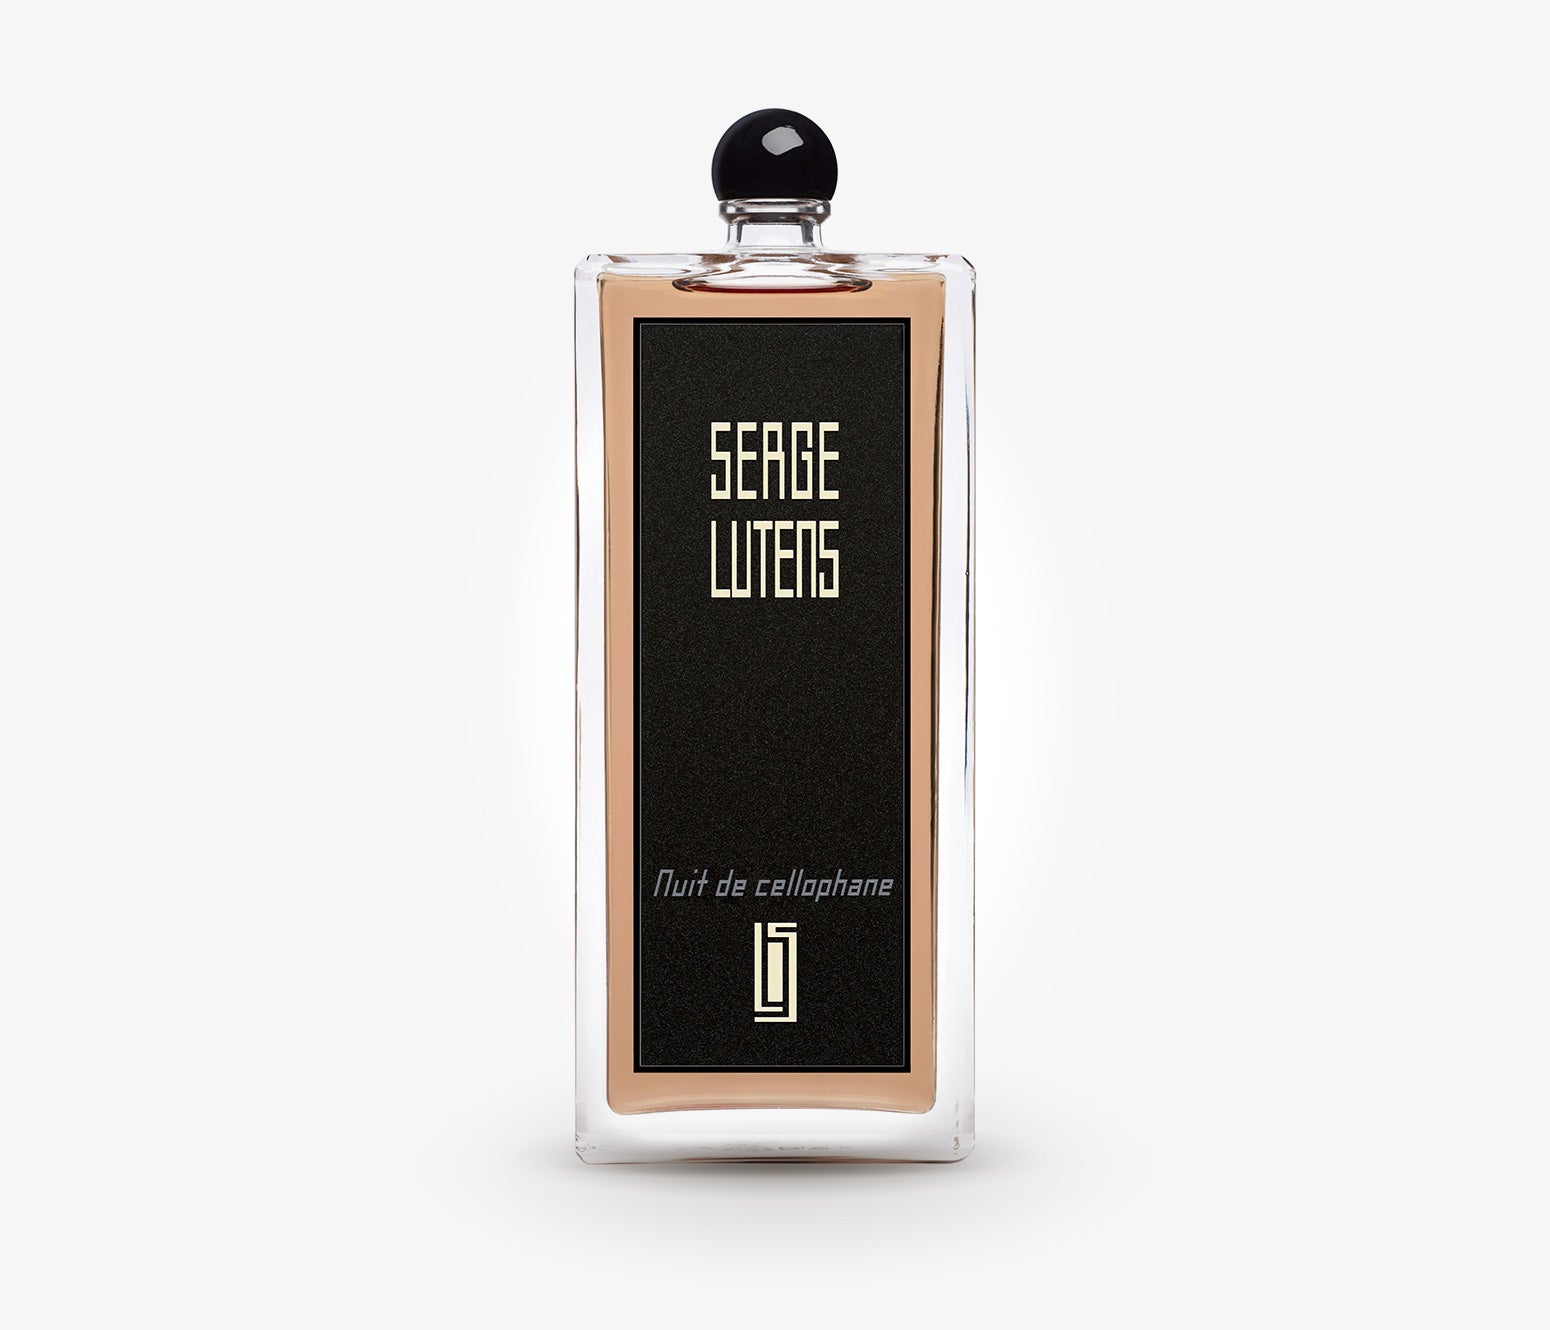 Serge Lutens - Nuit de Cellophane - 100ml - DFU001 - product image - Fragrance - Les Senteurs